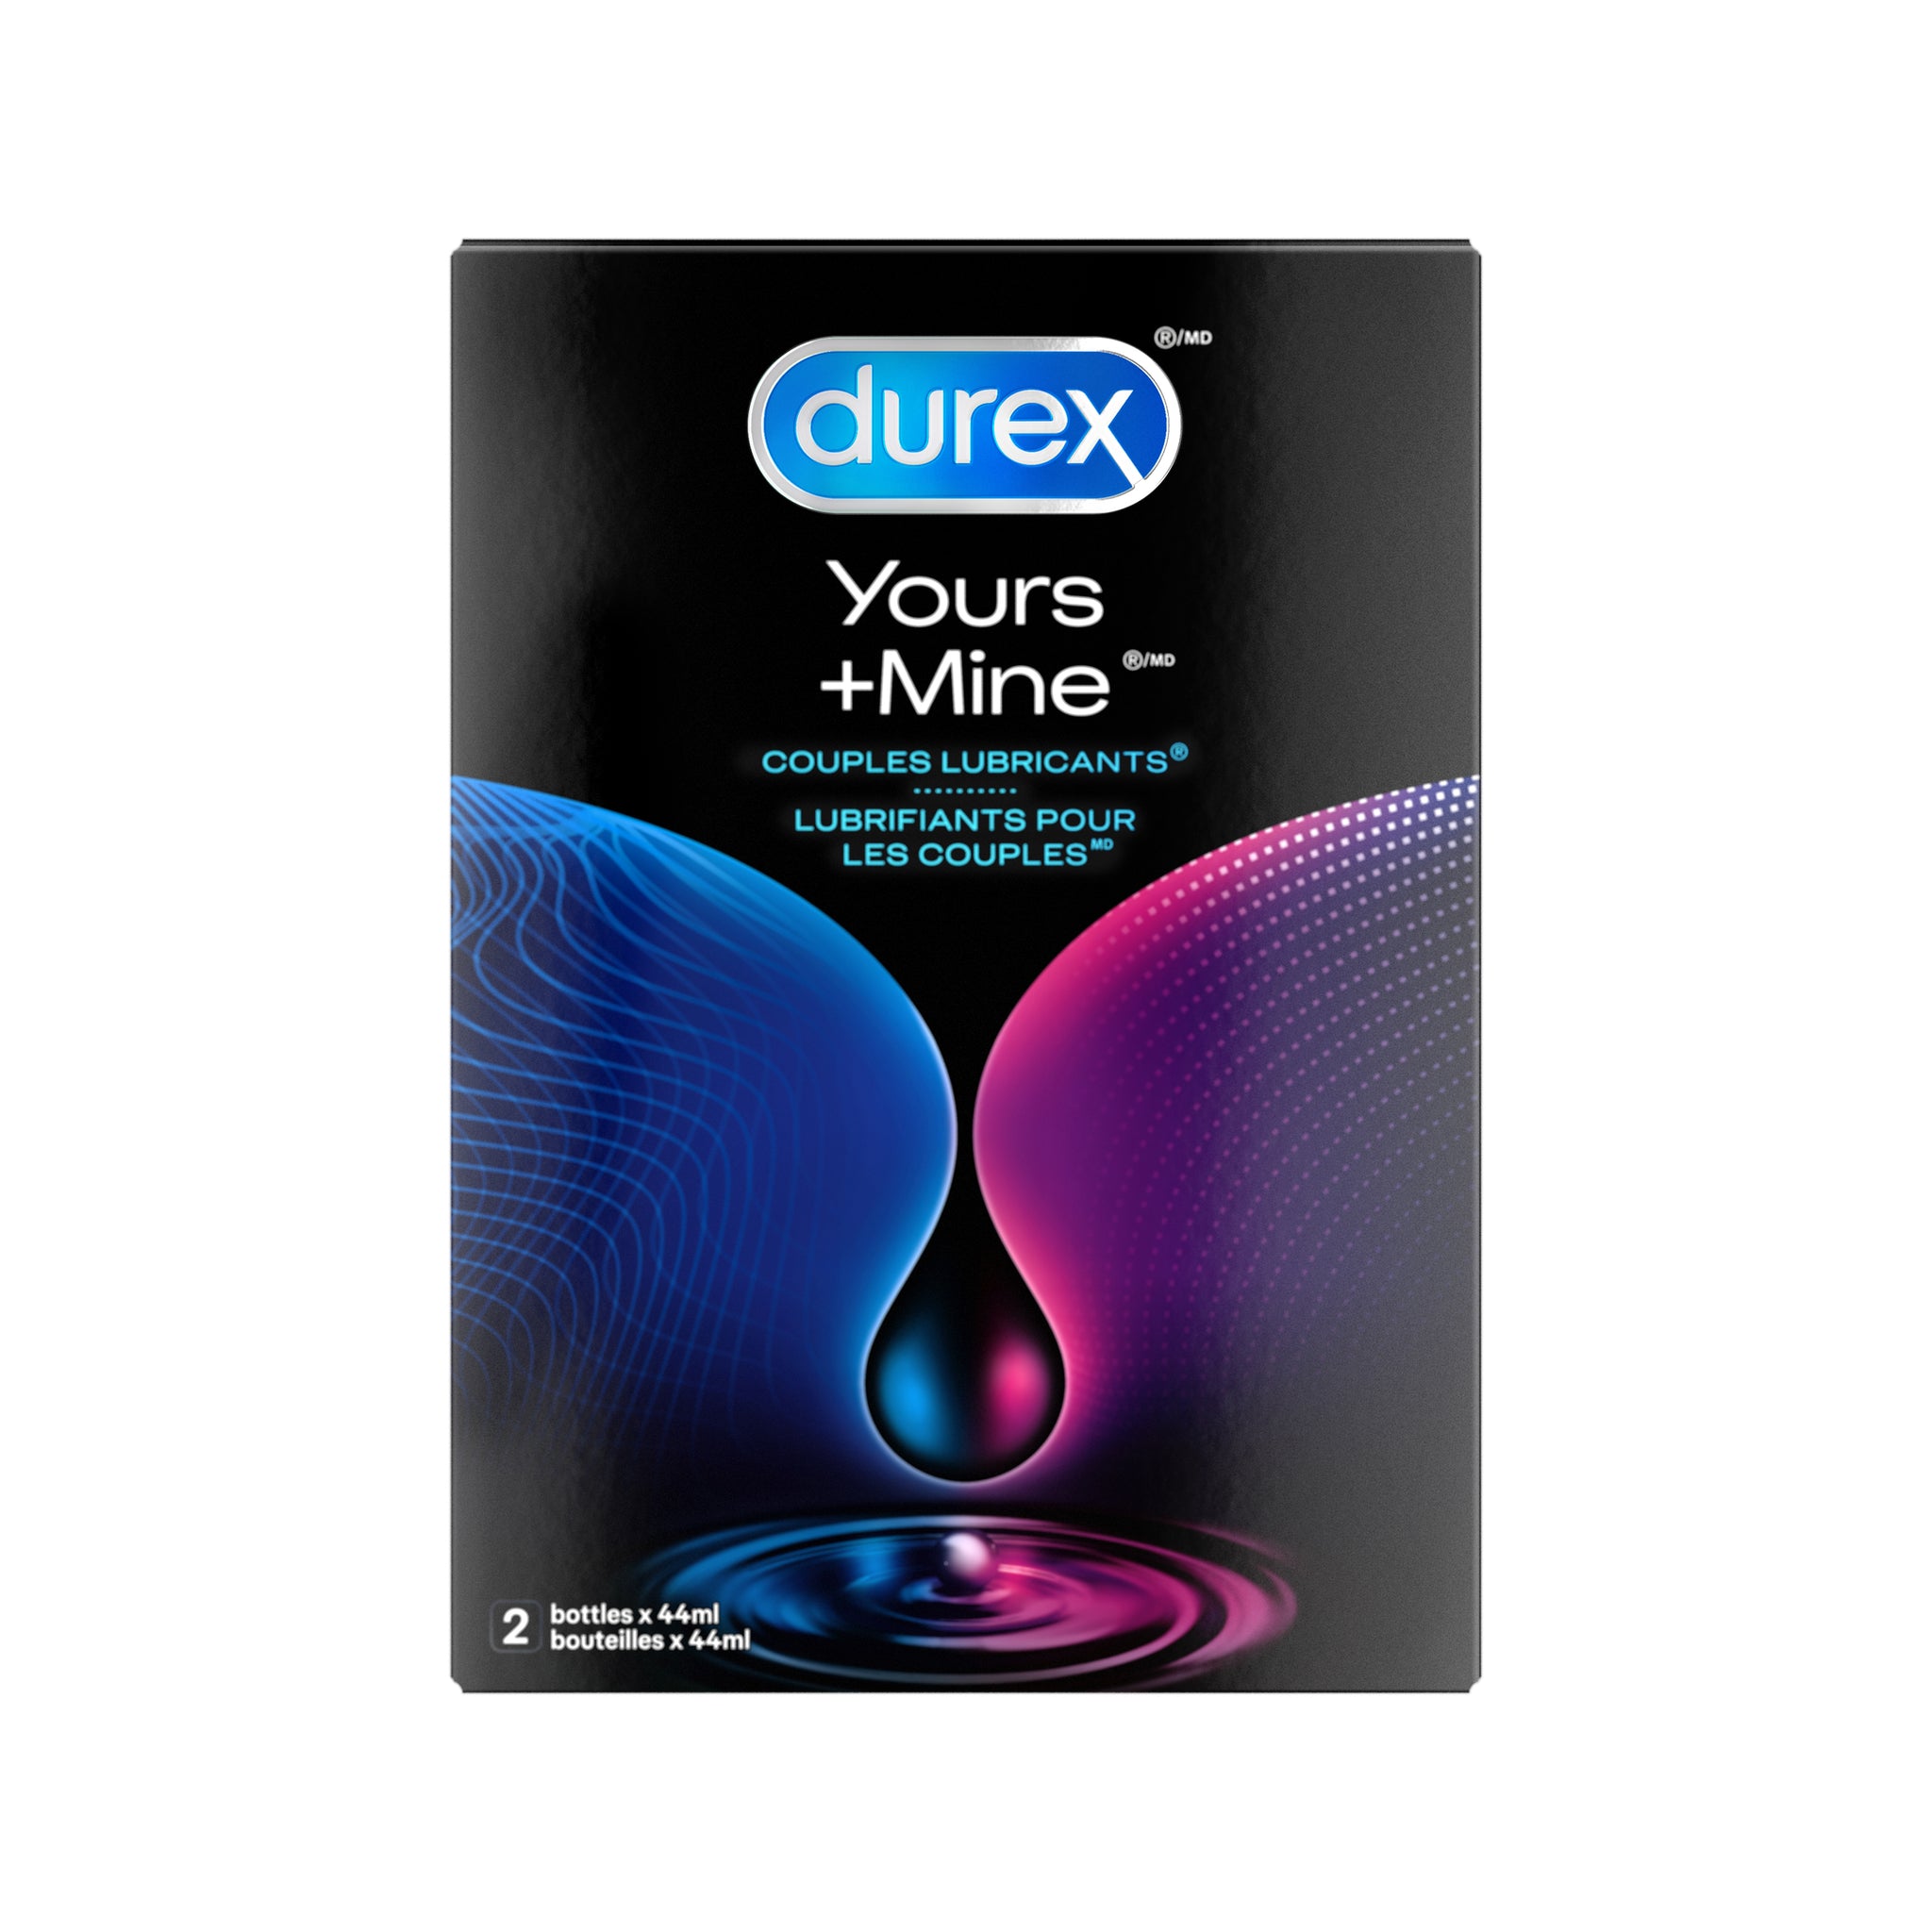 packshot of EN Packaged Durex Yours + Mine Couples Lubricants / FR Lubrifiant pour couples Durex Yours + Mine dans son emballage